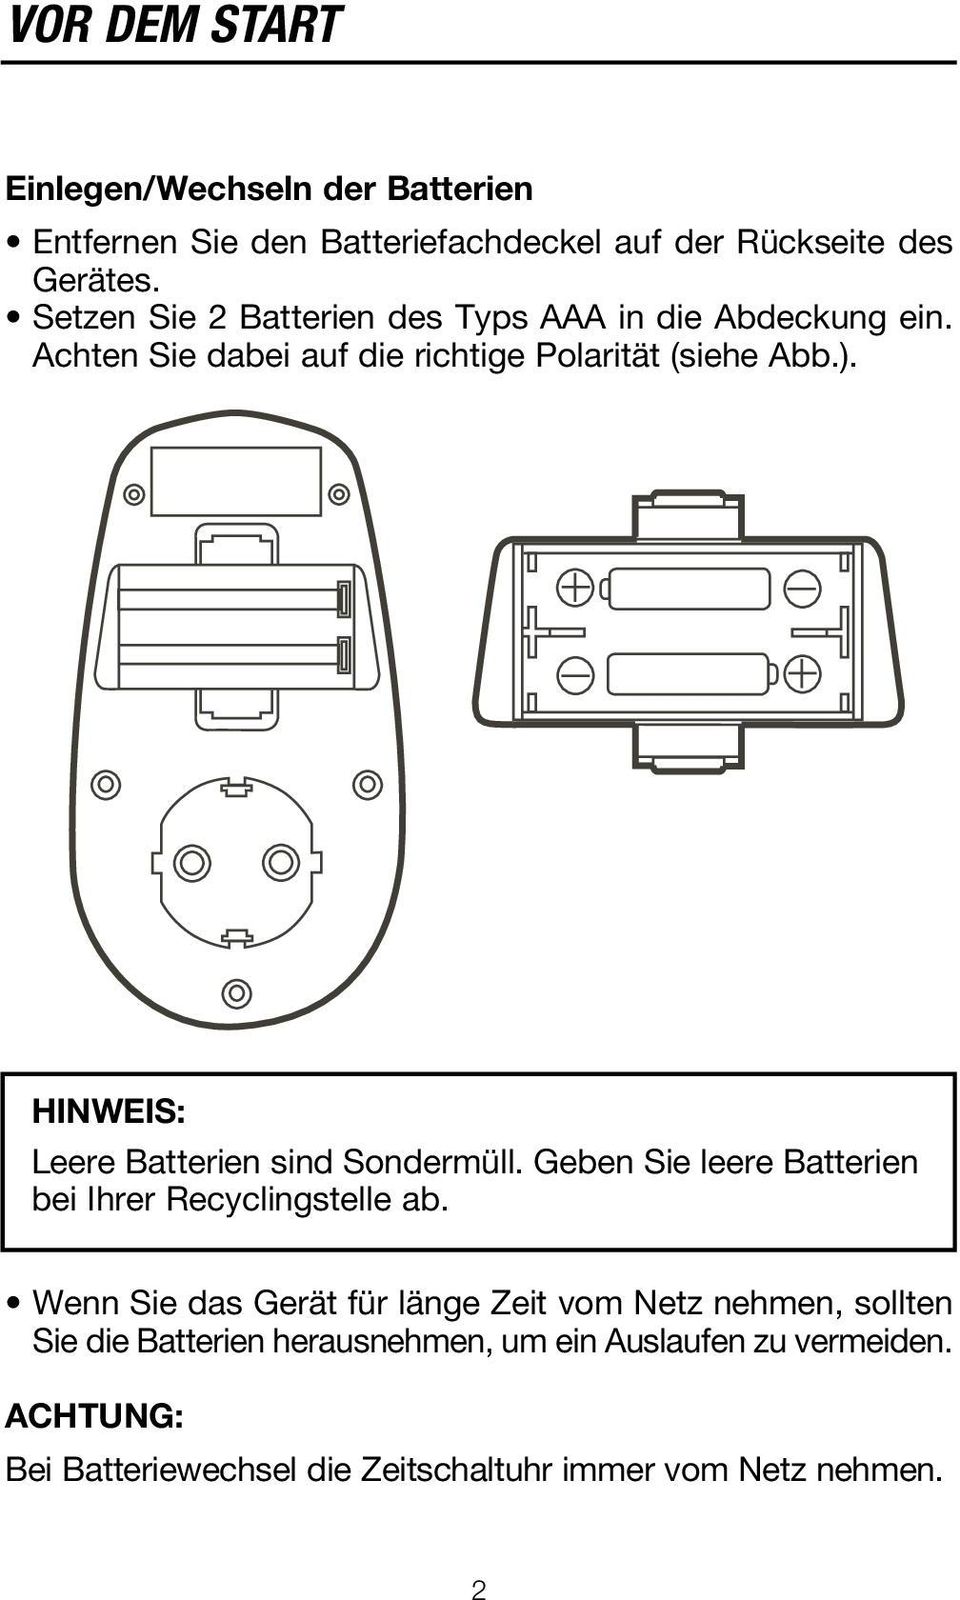 HINWEIS: Leere Batterien sind Sondermüll. Geben Sie leere Batterien bei Ihrer Recyclingstelle ab.